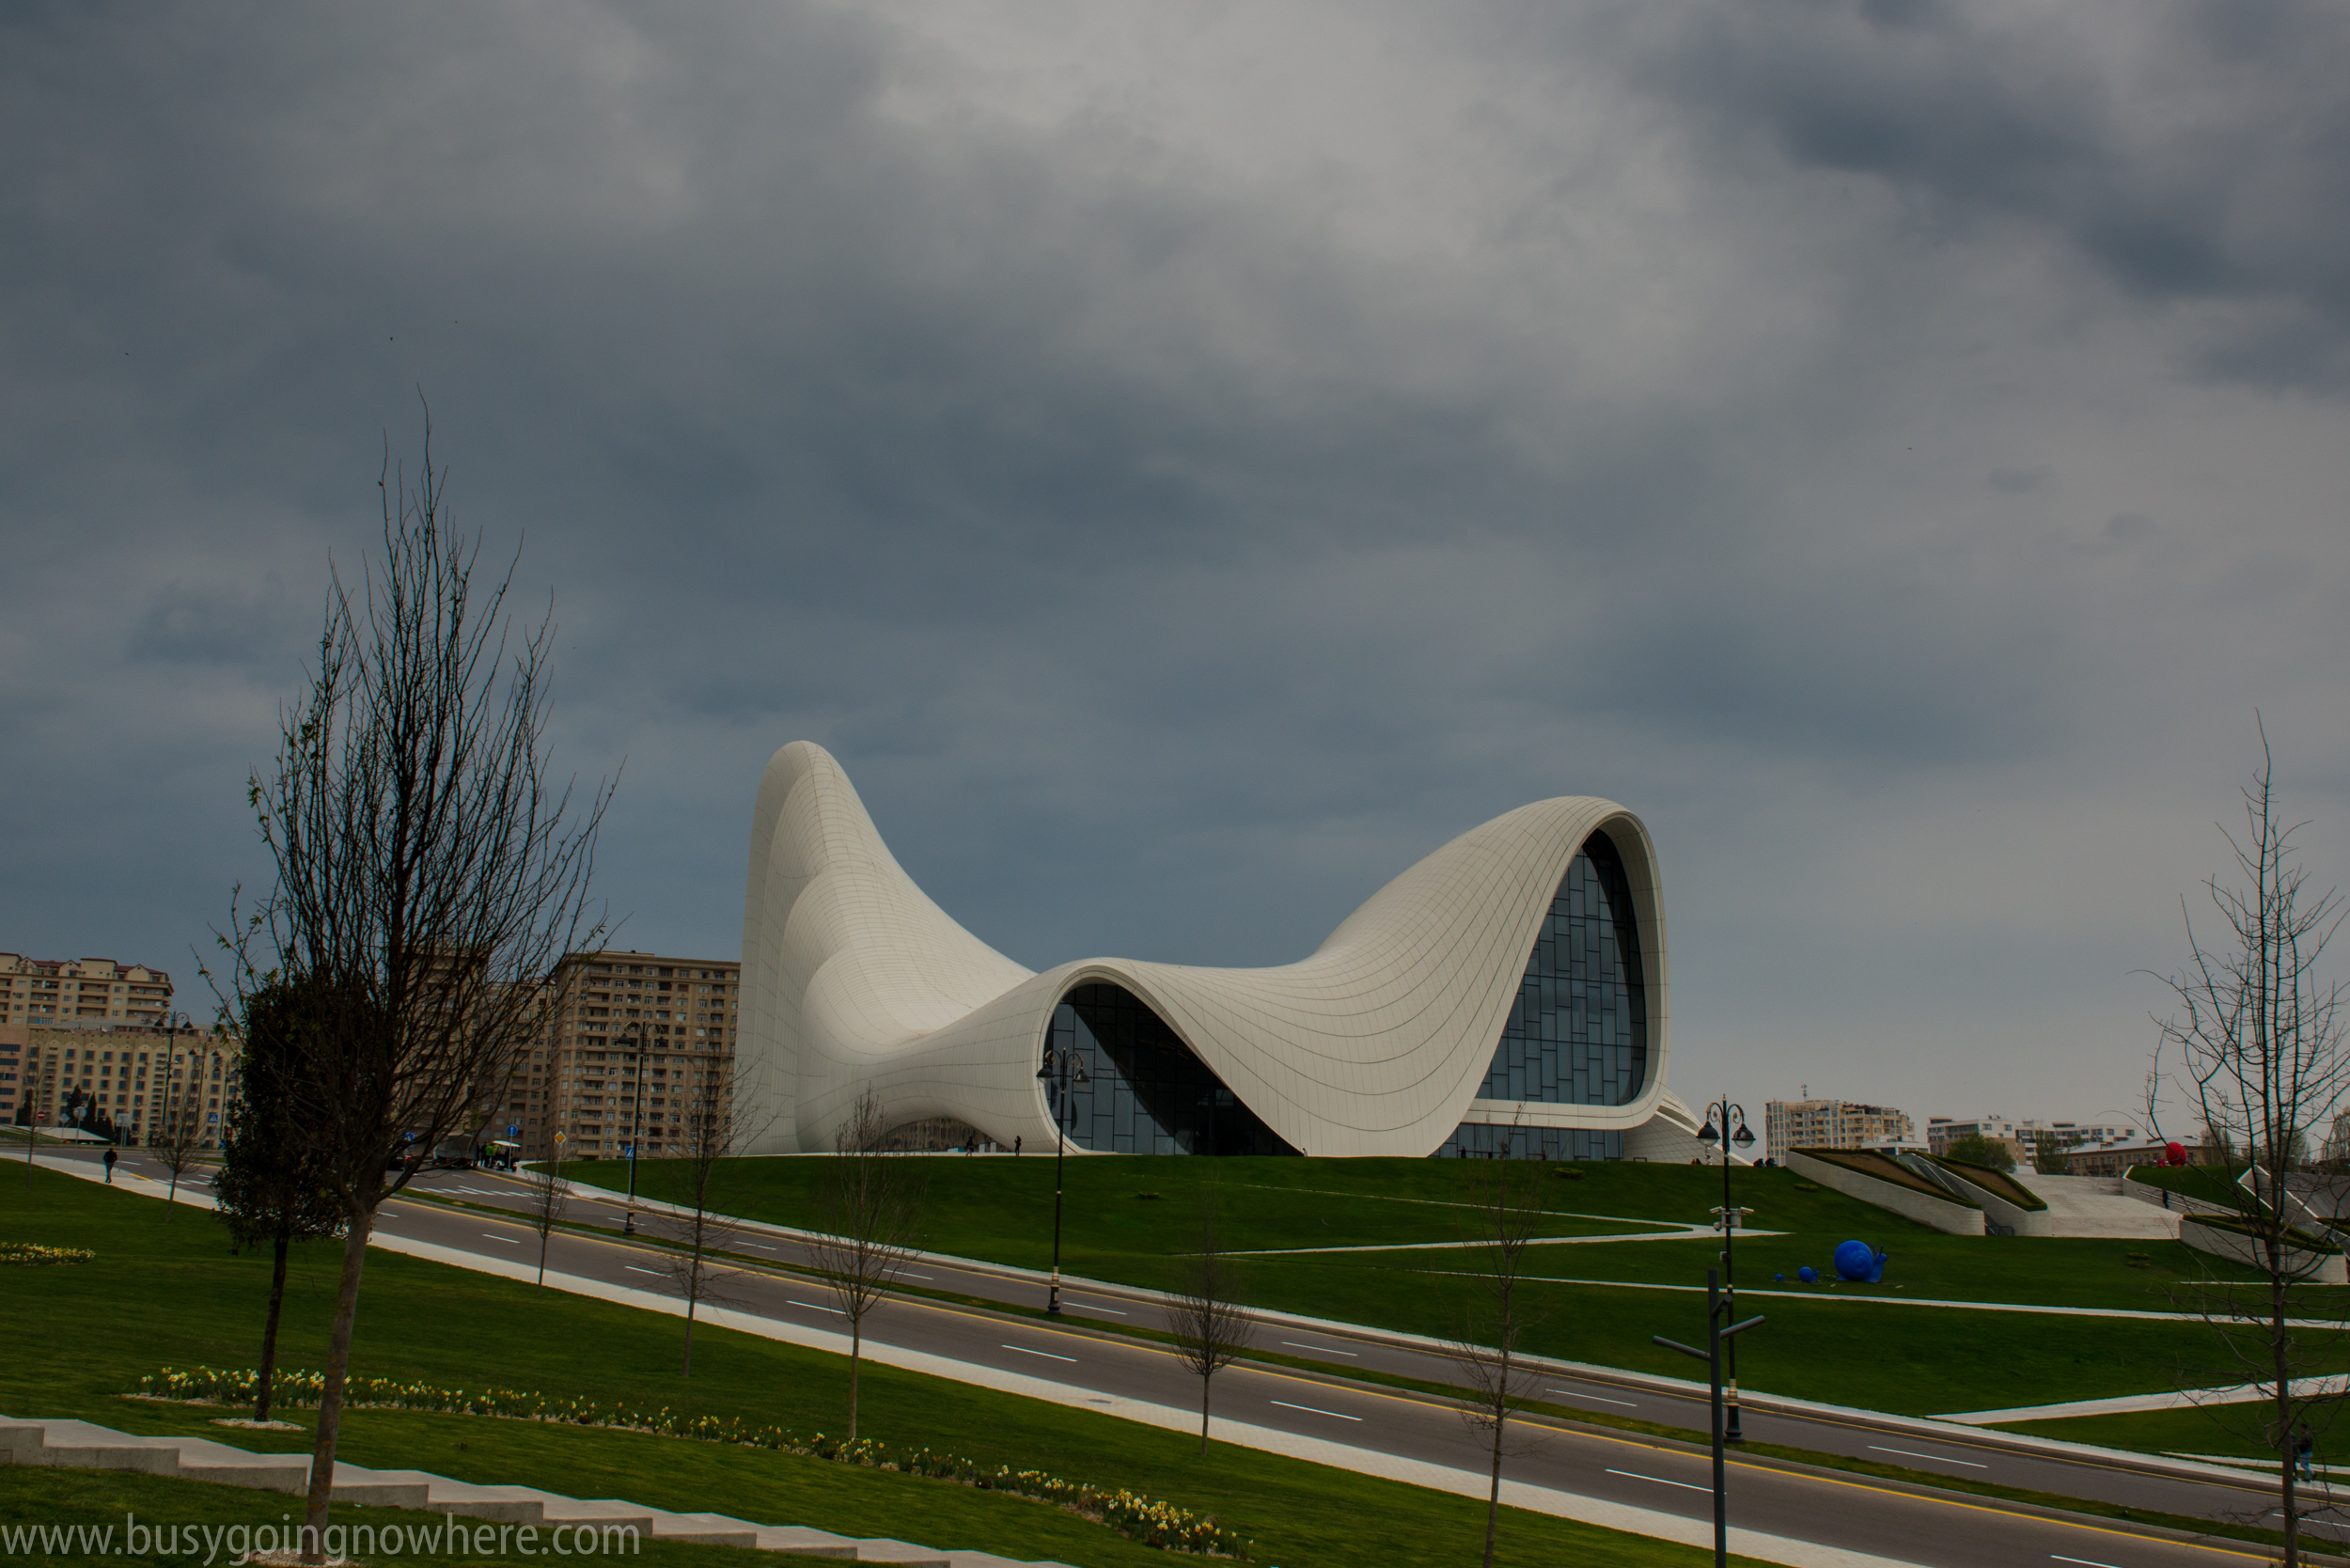 The unmistakable Heydar Aliyev Center